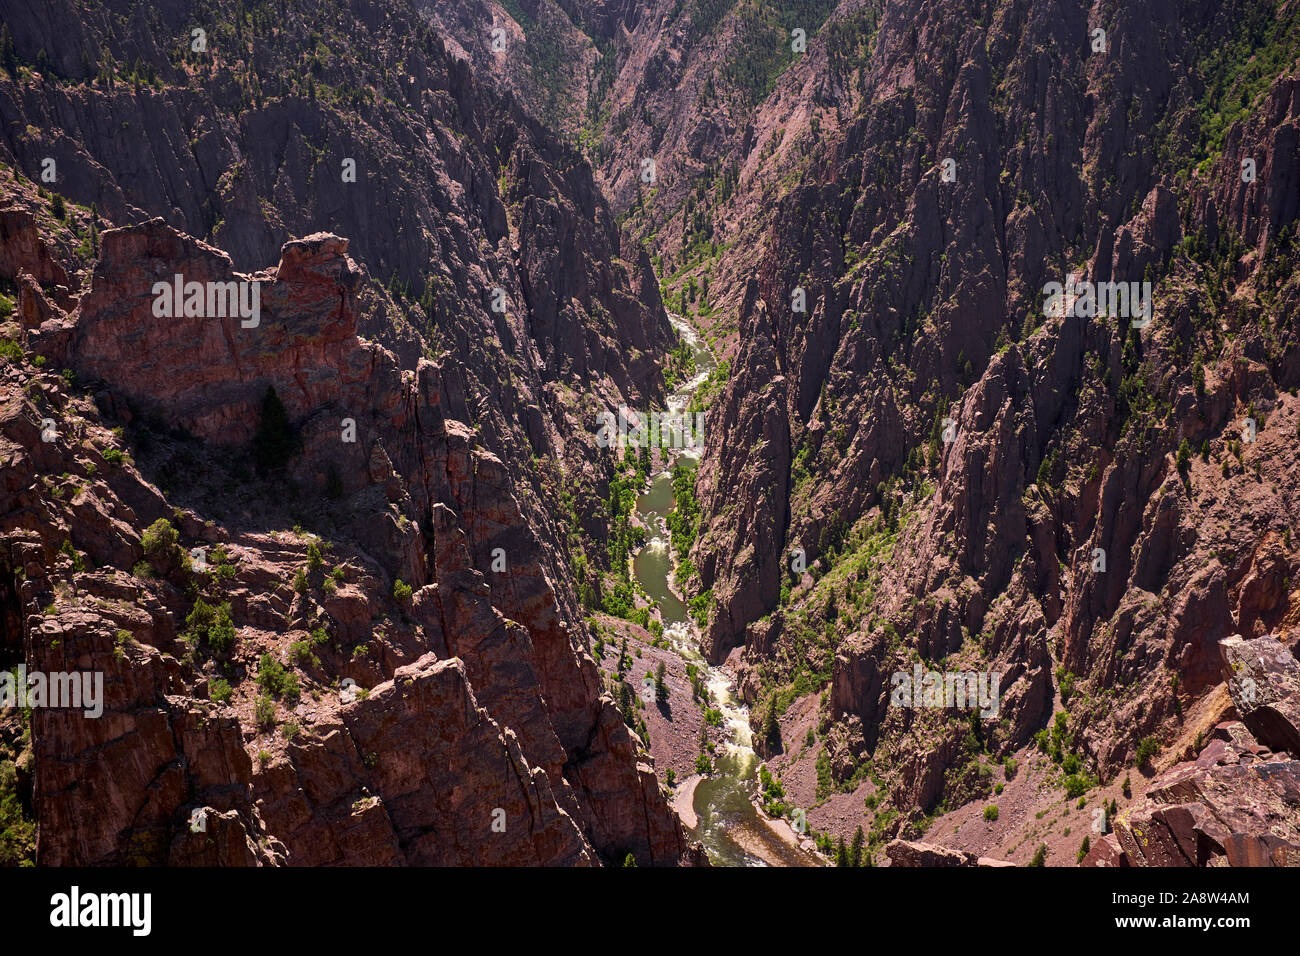 Black Canyon of the Gunnison, Colorado, USA Stock Photo